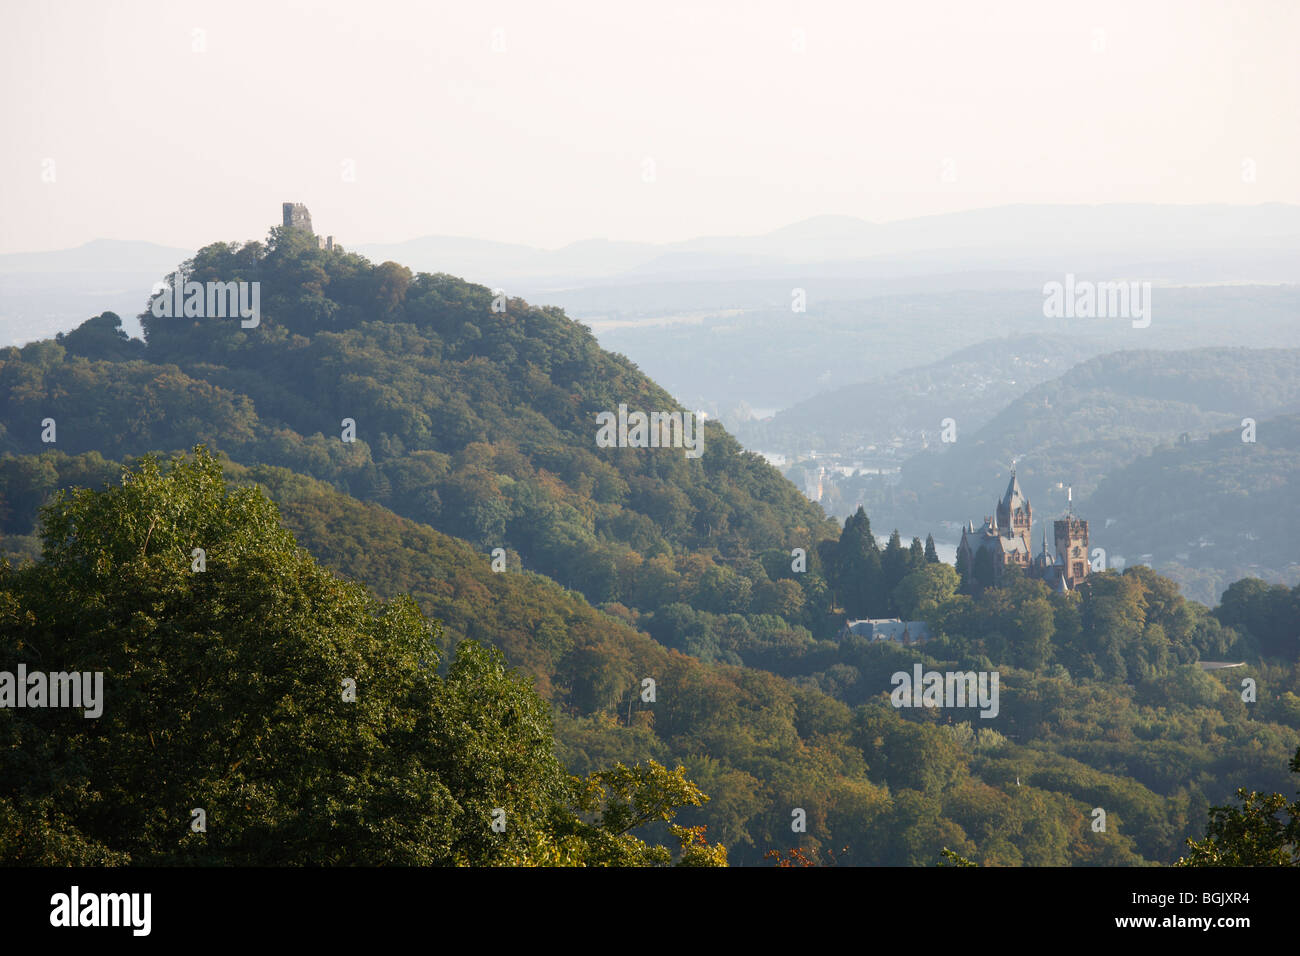 Königswinter, Schloß Drachenburg und Burg Drachenfels, Blick vom Petersberg Foto Stock